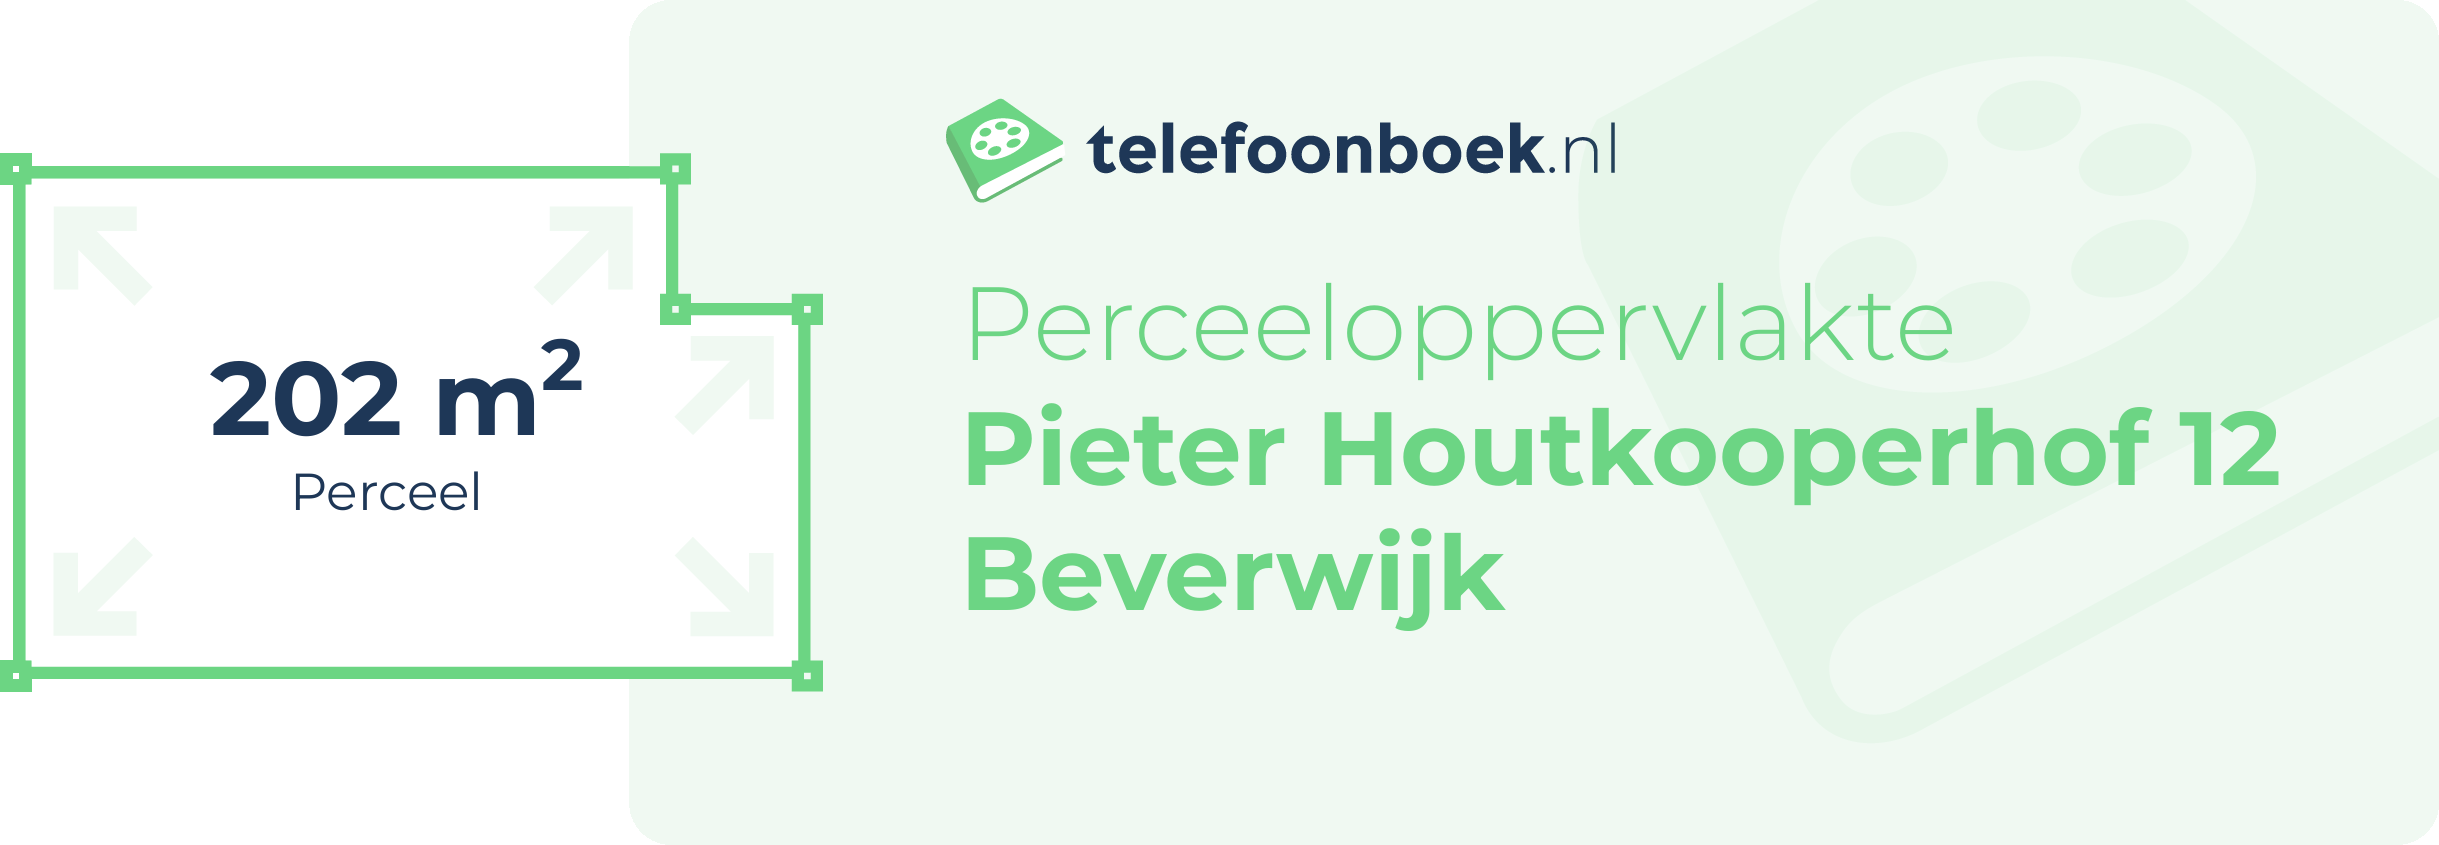 Perceeloppervlakte Pieter Houtkooperhof 12 Beverwijk